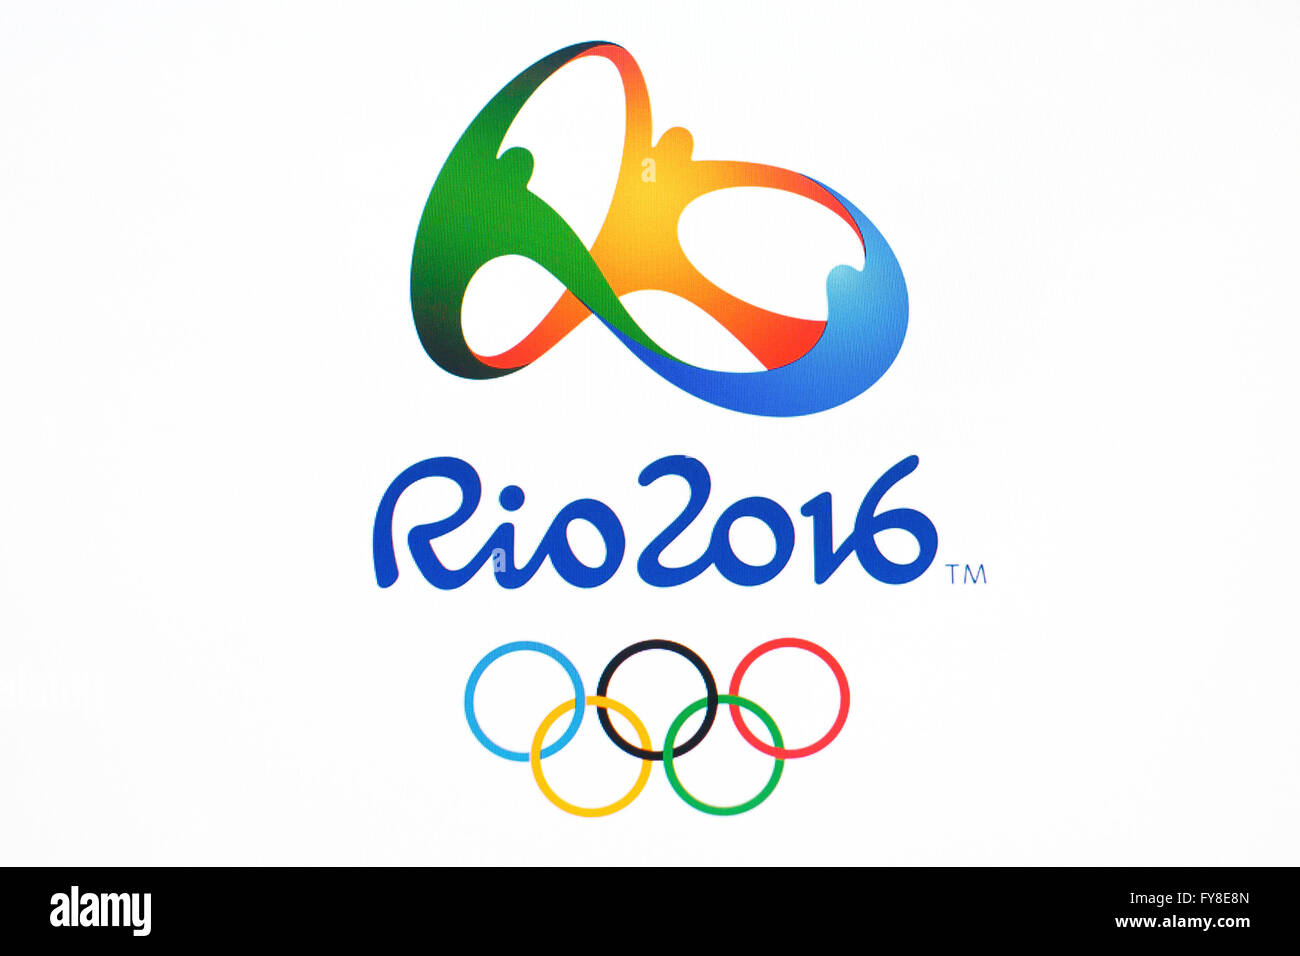 GDANSK, Polonia - 20 de noviembre de 2015. En la pantalla de ordenador- logo oficial de los Juegos Olímpicos de Verano de Río 2016 en Brasil, Editorial Foto de stock